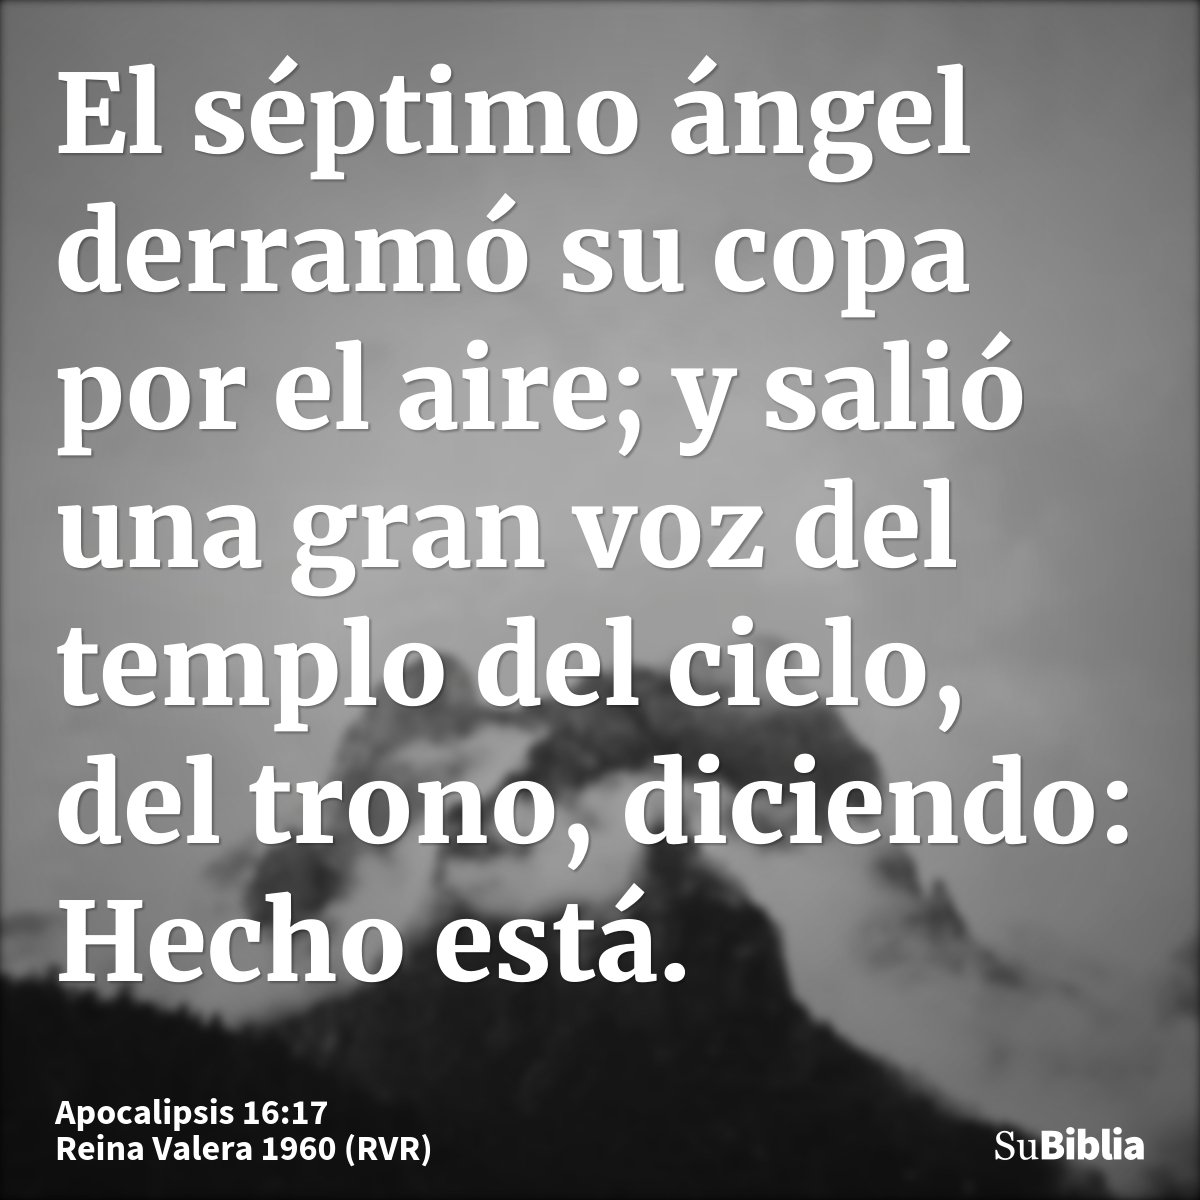 El séptimo ángel derramó su copa por el aire; y salió una gran voz del templo del cielo, del trono, diciendo: Hecho está.